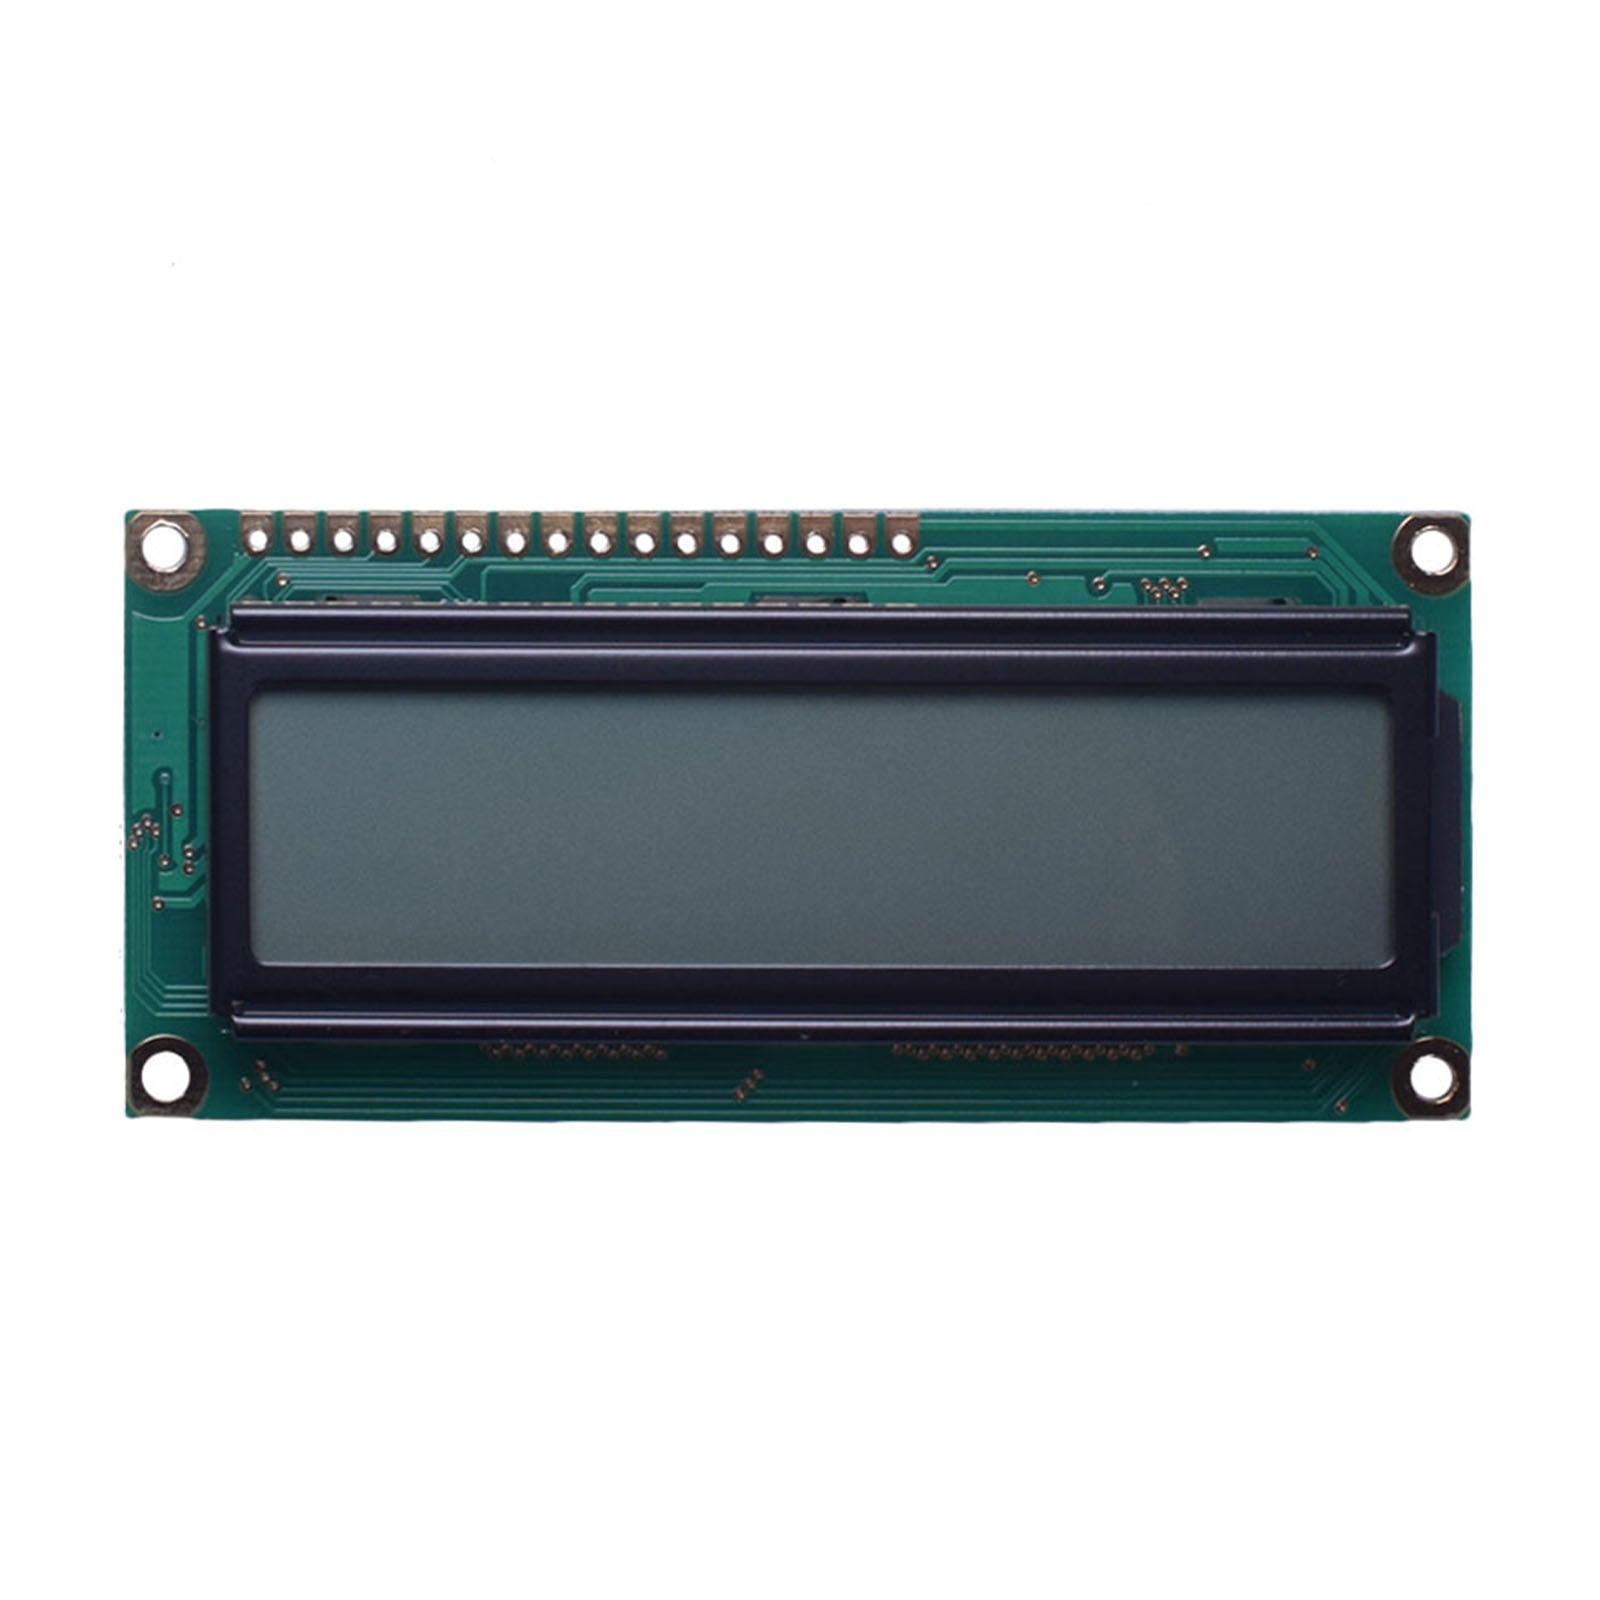 DisplayModule 2.67" 144x32 Graphic LCD - MCU